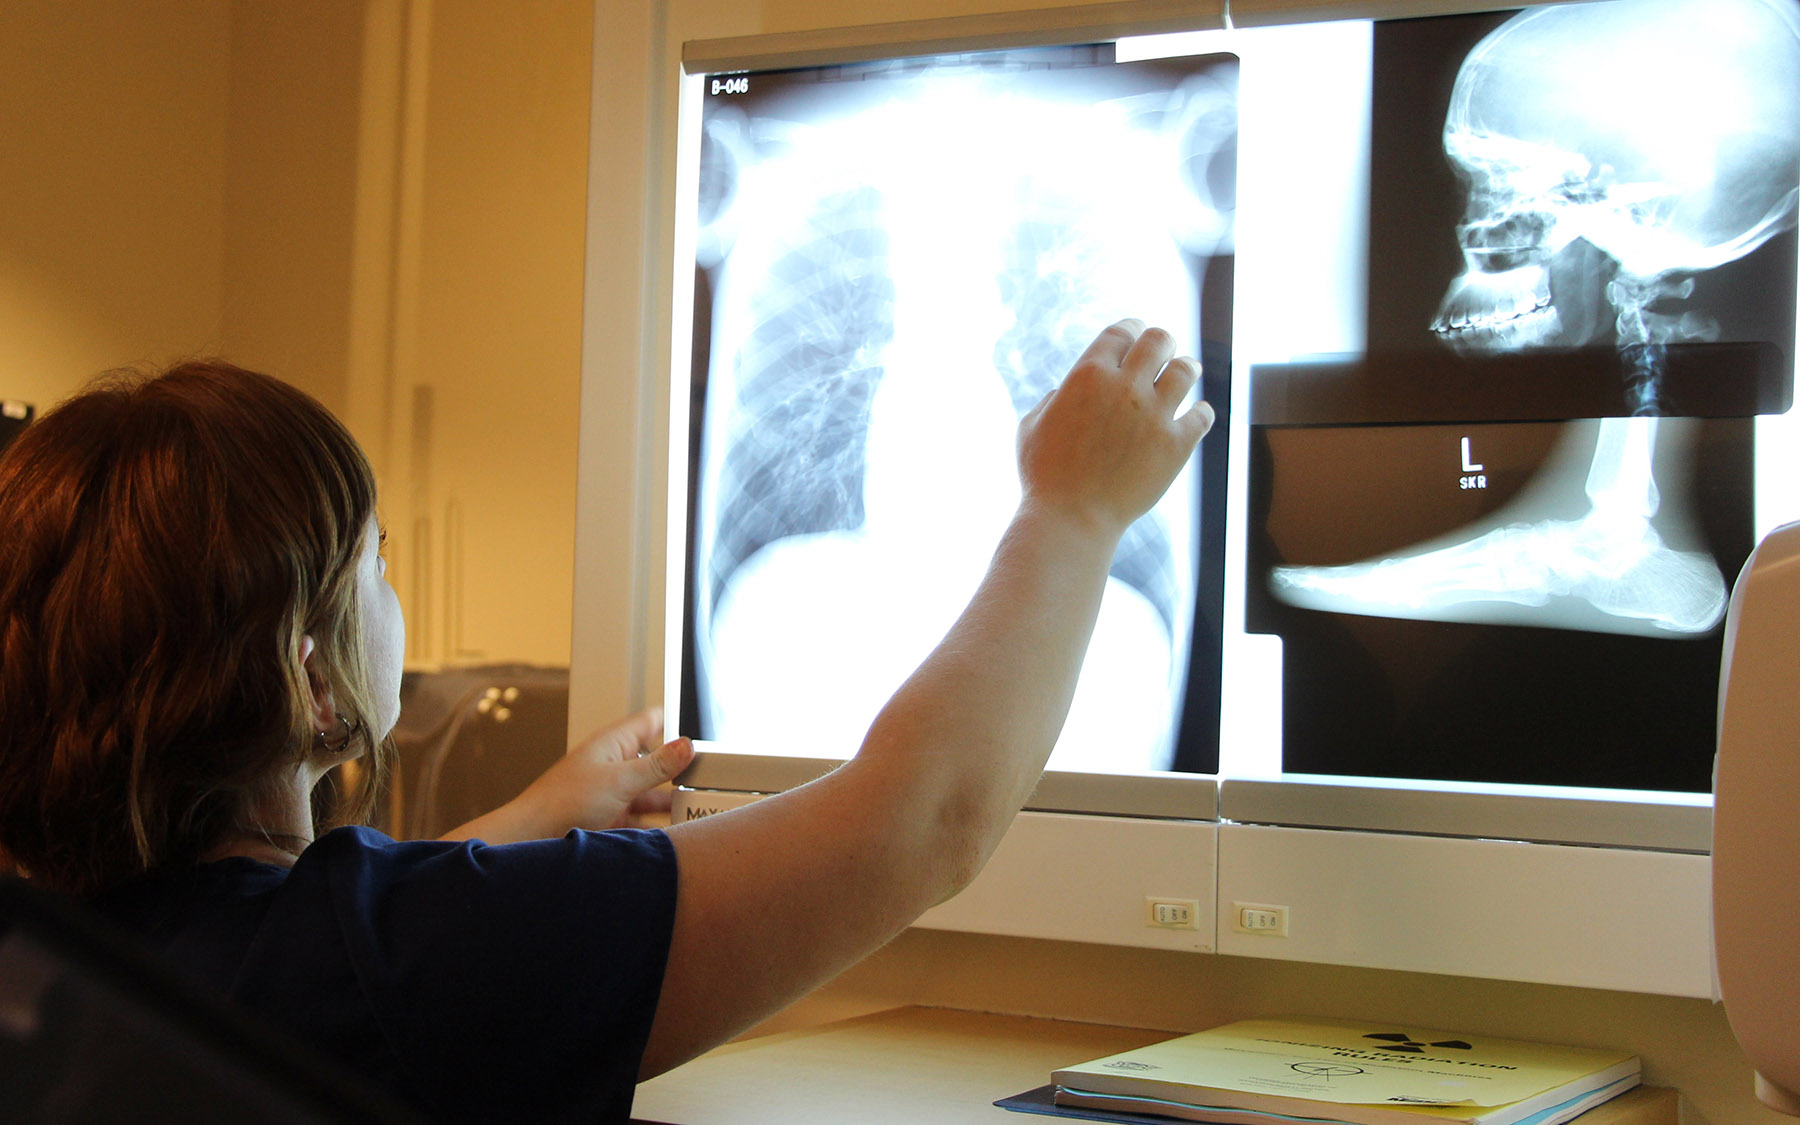 Student examining x-rays.